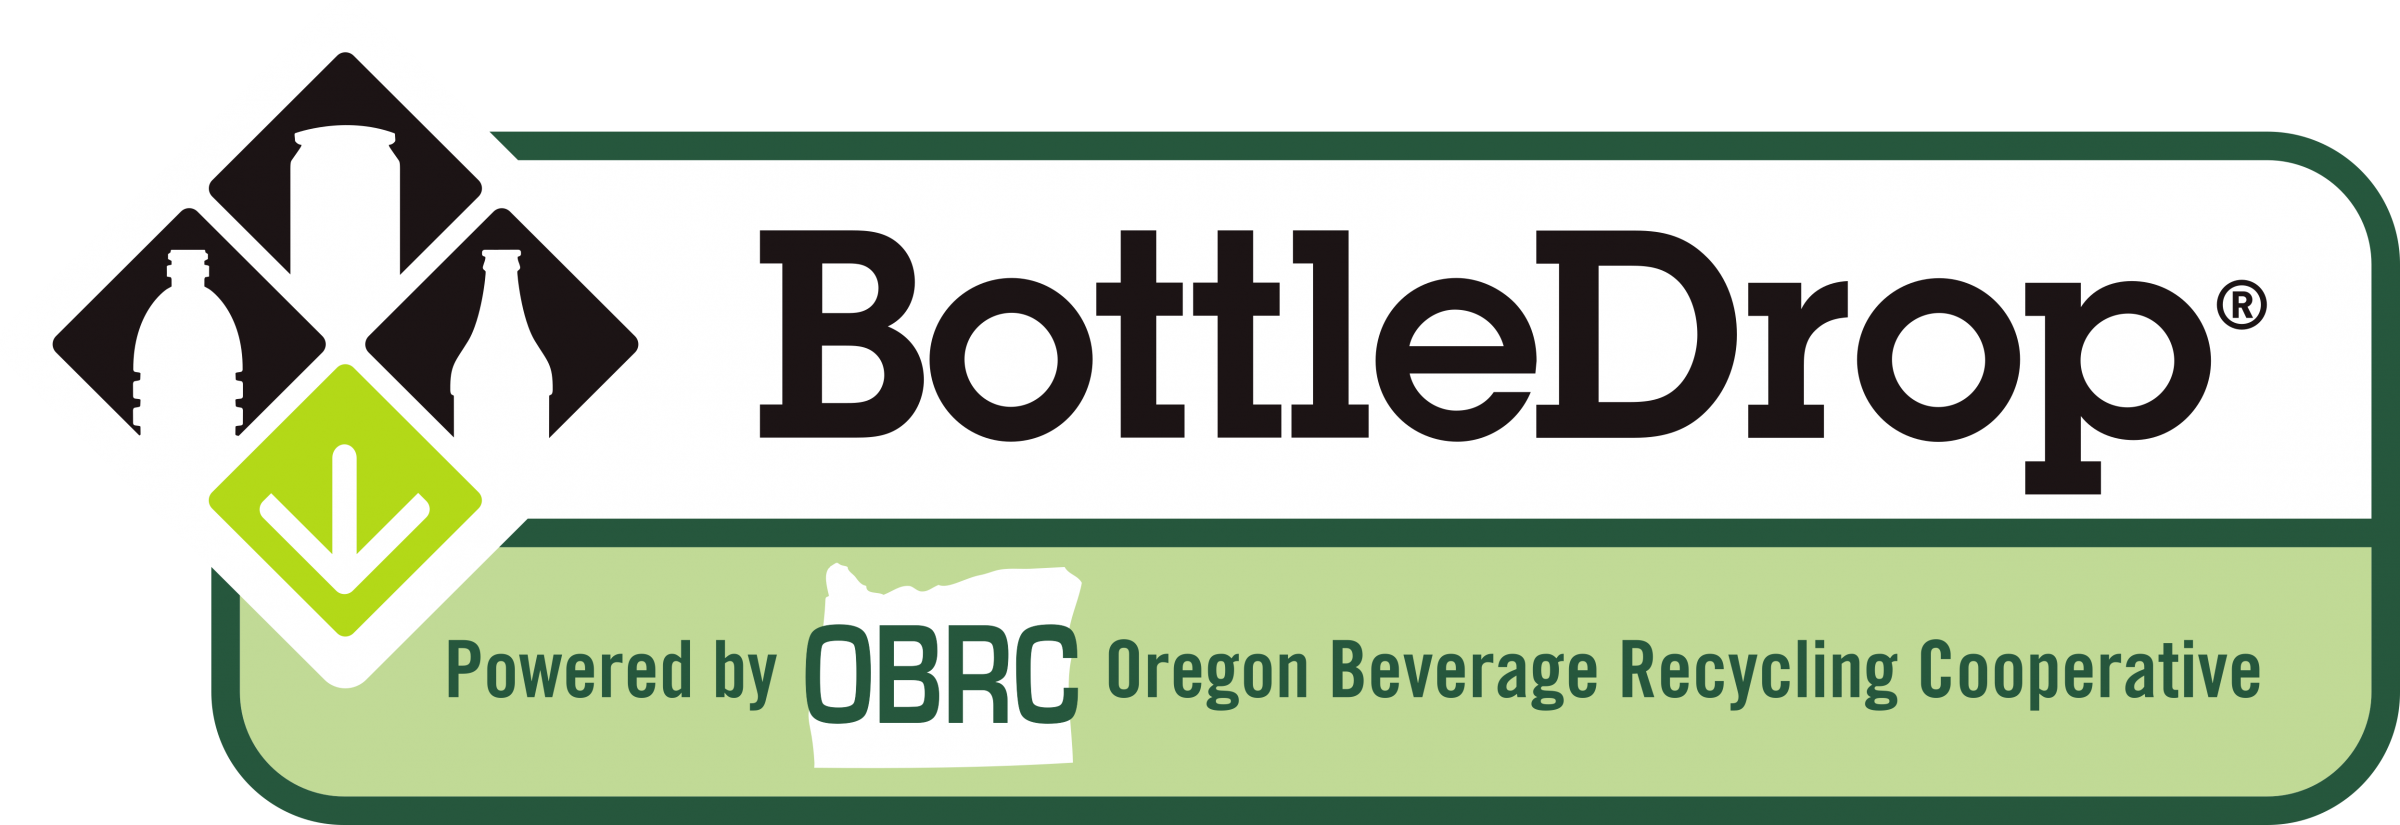 OBRC BottleDrop